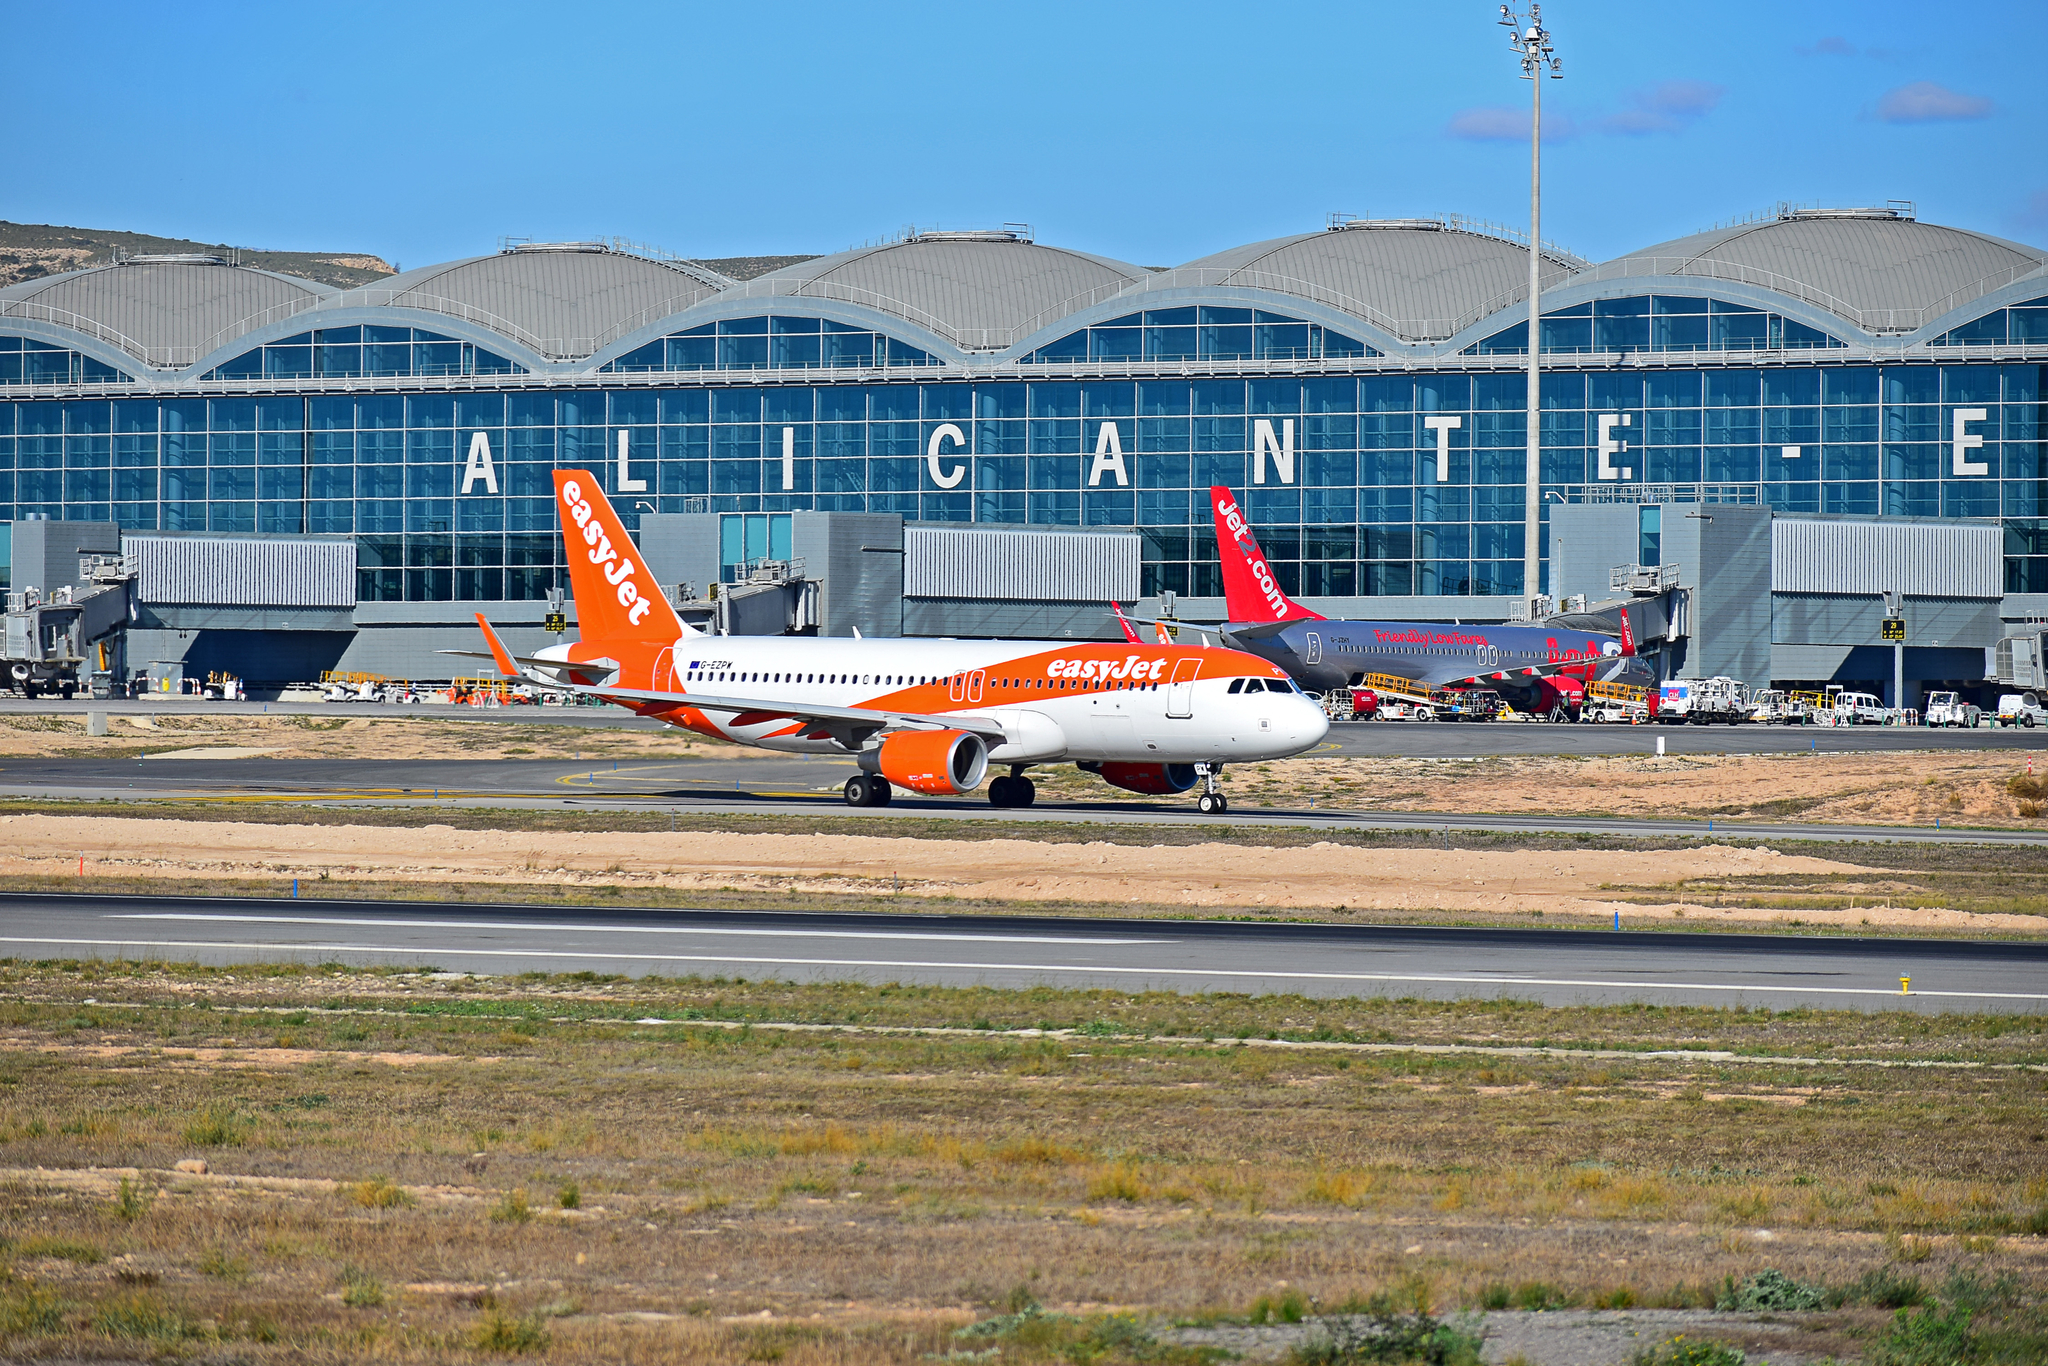 El aeropuerto de Alicante supera los 15 millones de pasajeros anuales.